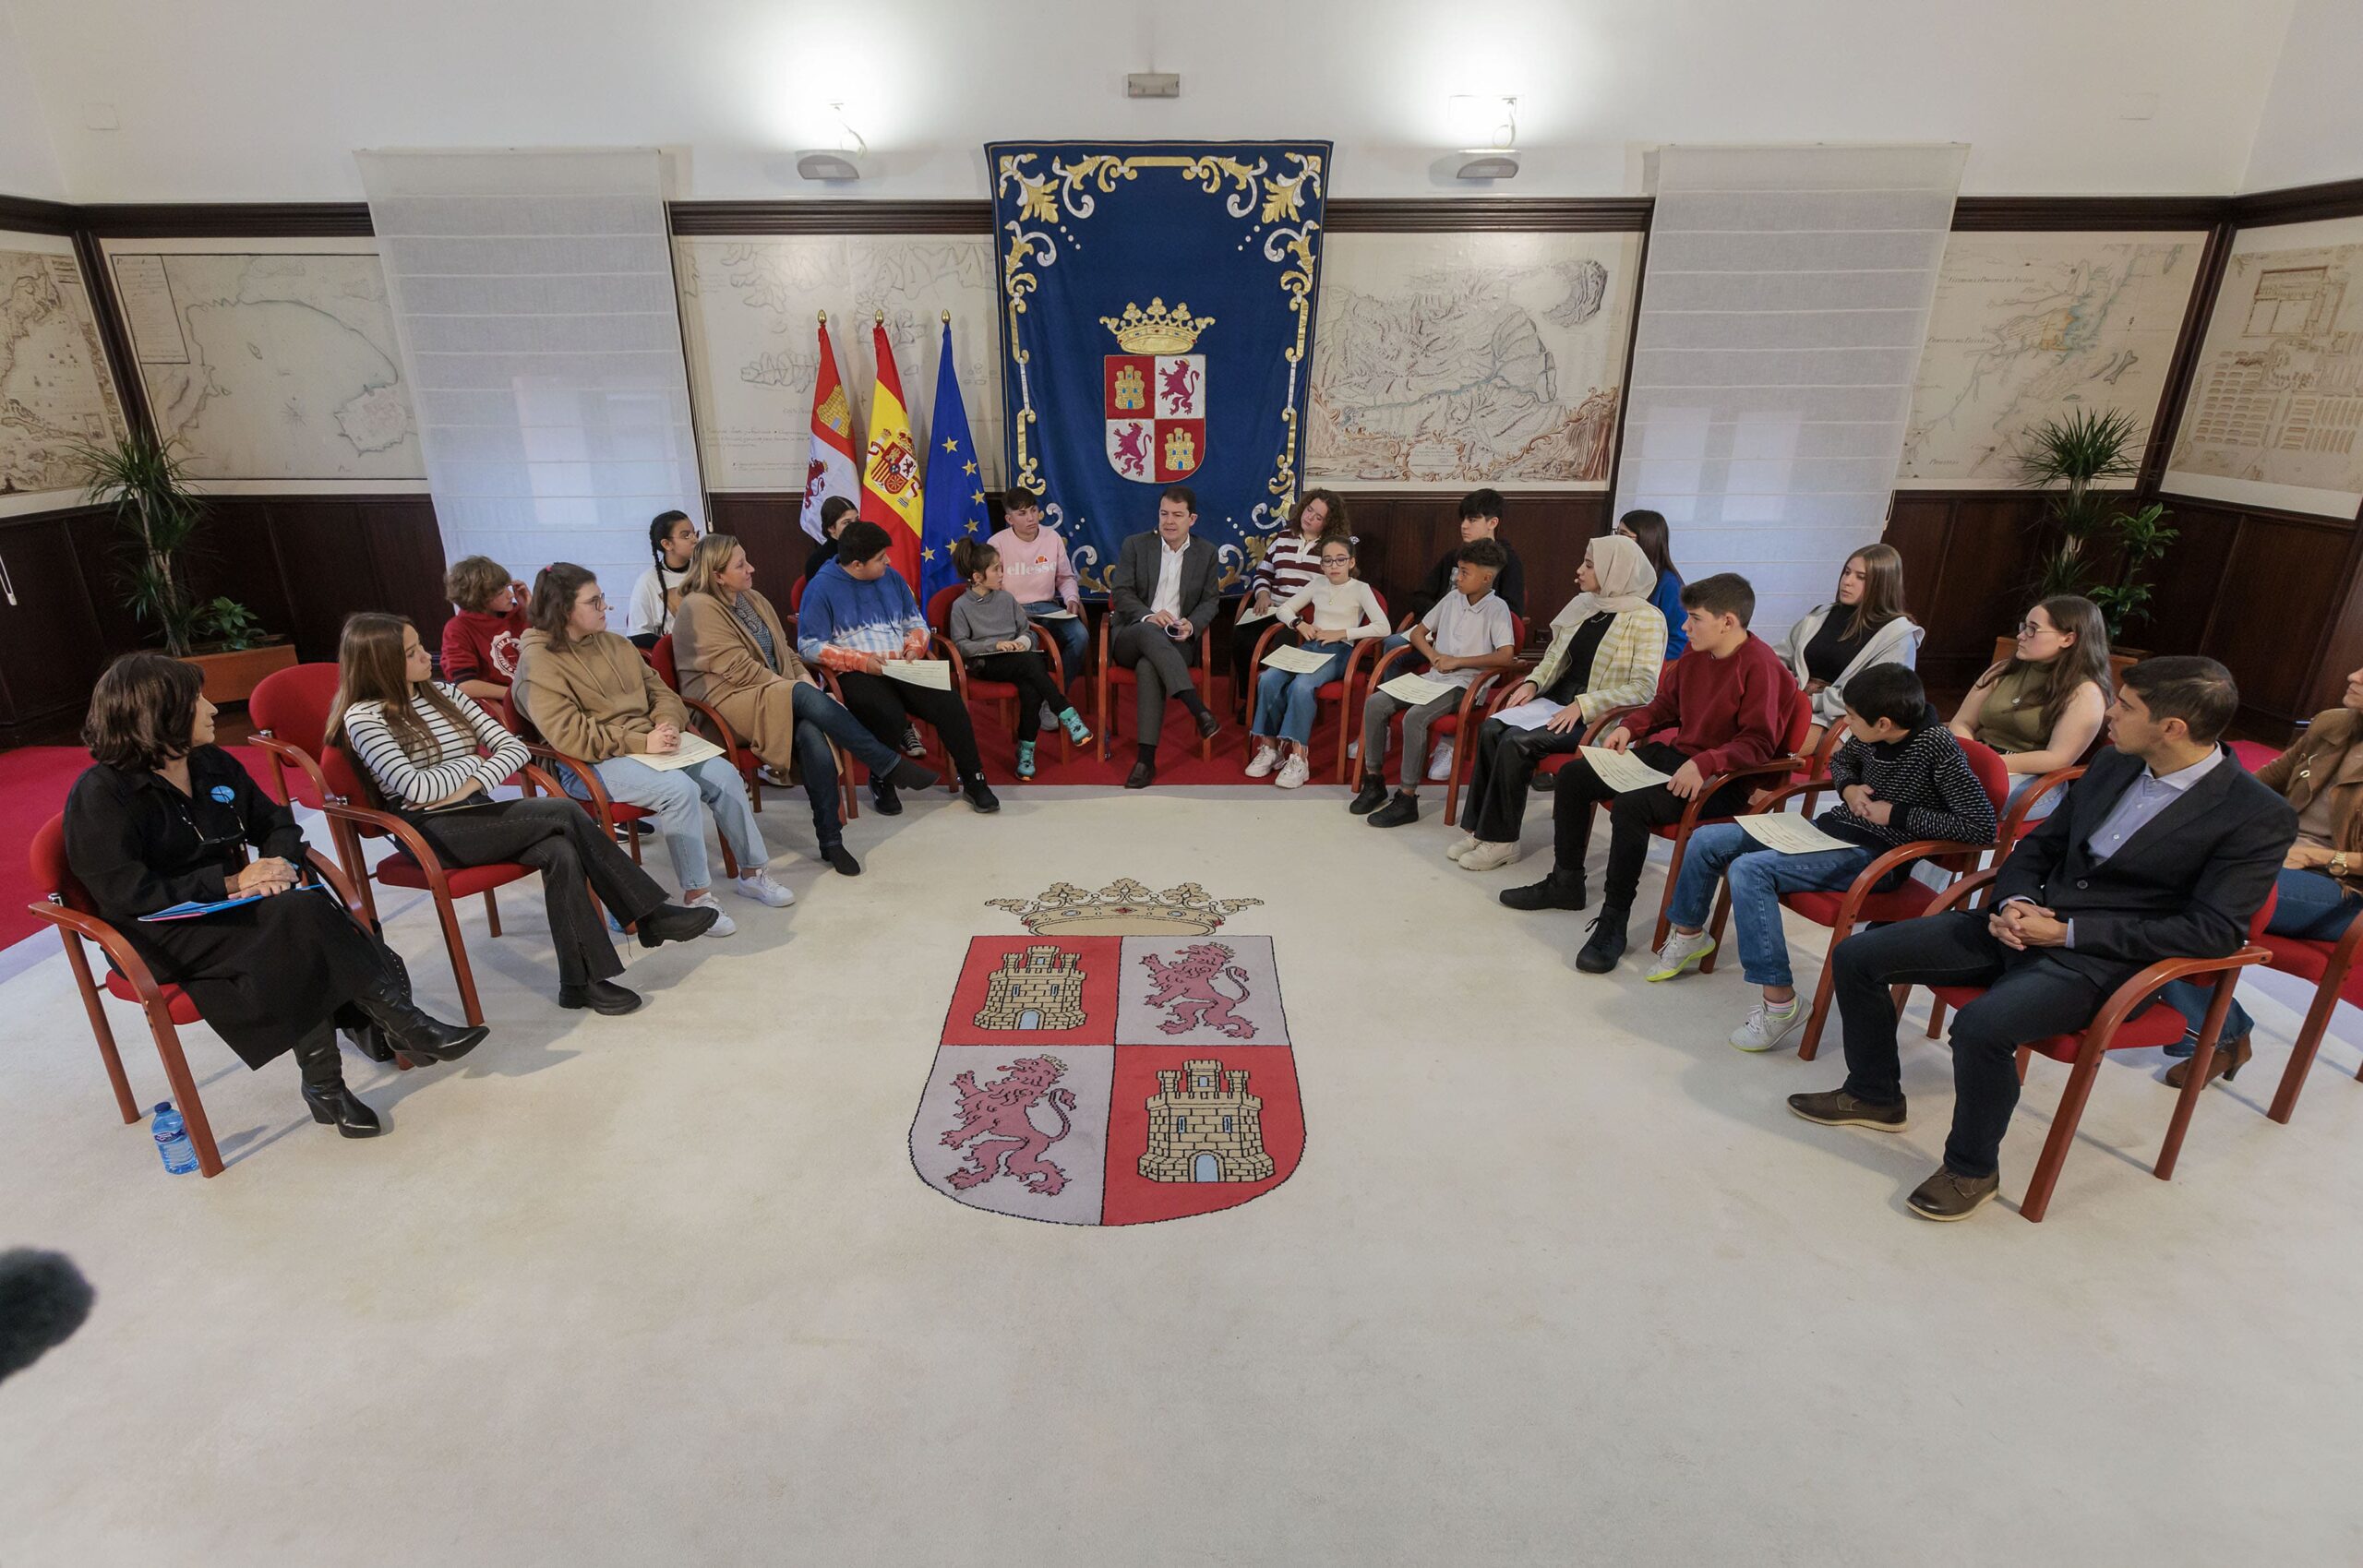 Las niñas, niños y adolescentes de Carbajosa tienen representante en el Foro de Participación de Castilla y León. Nuestra compañera Lucía